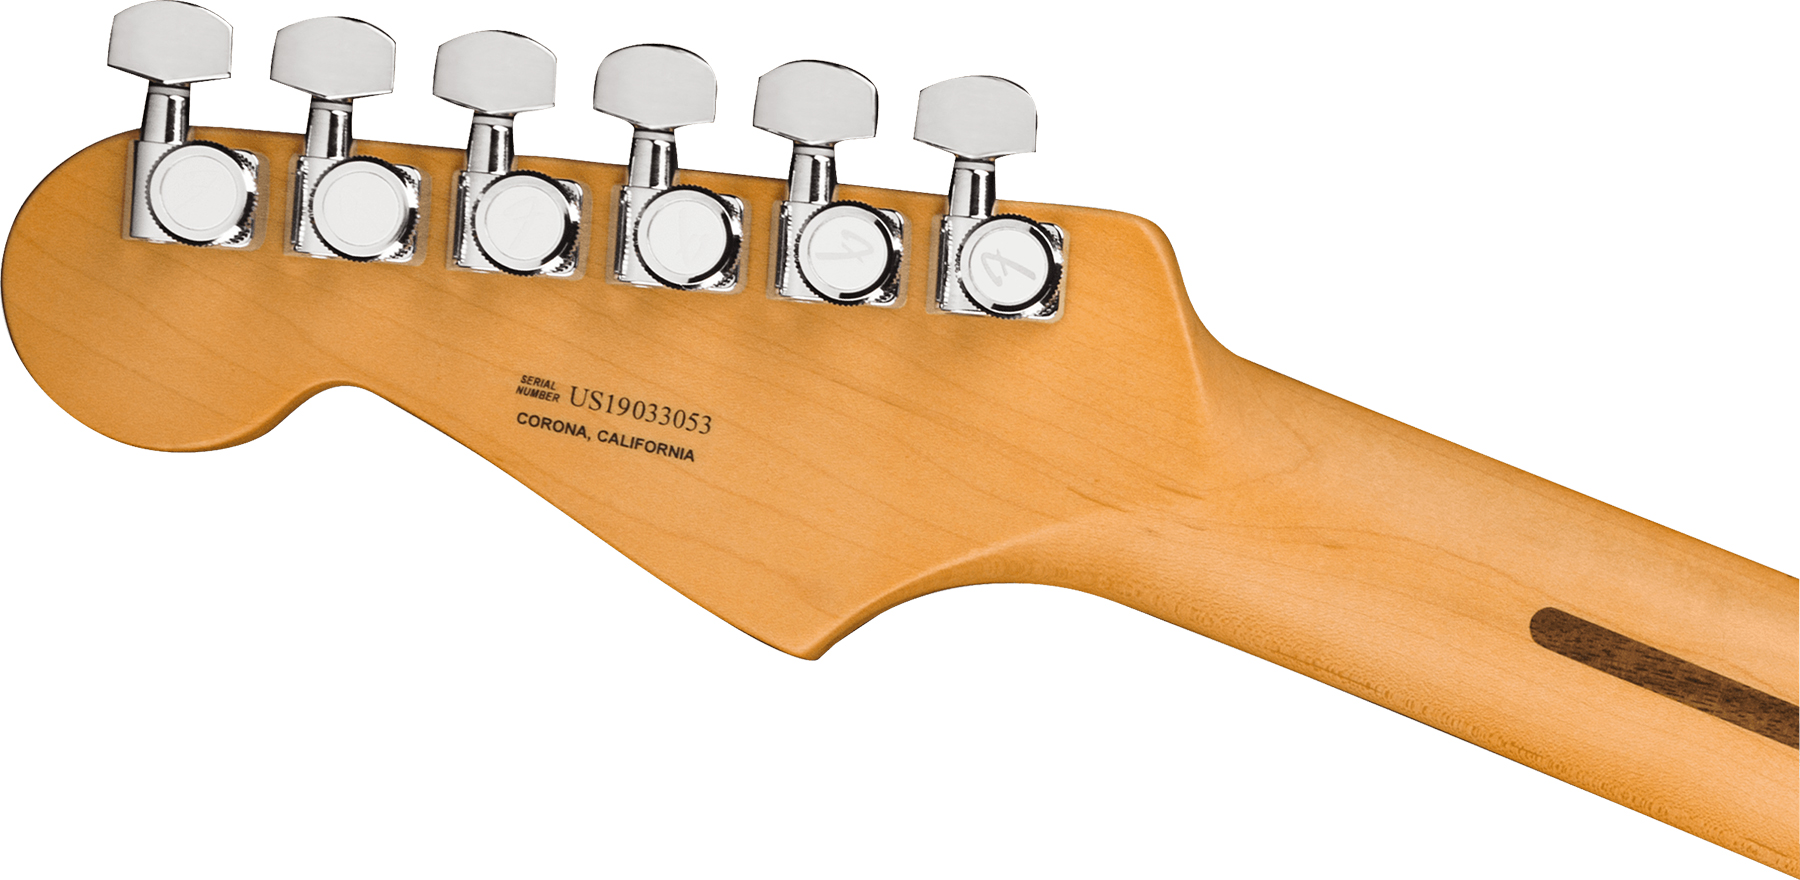 Fender Strat American Ultra 2019 Usa Mn - Ultraburst - Guitarra eléctrica con forma de str. - Variation 3